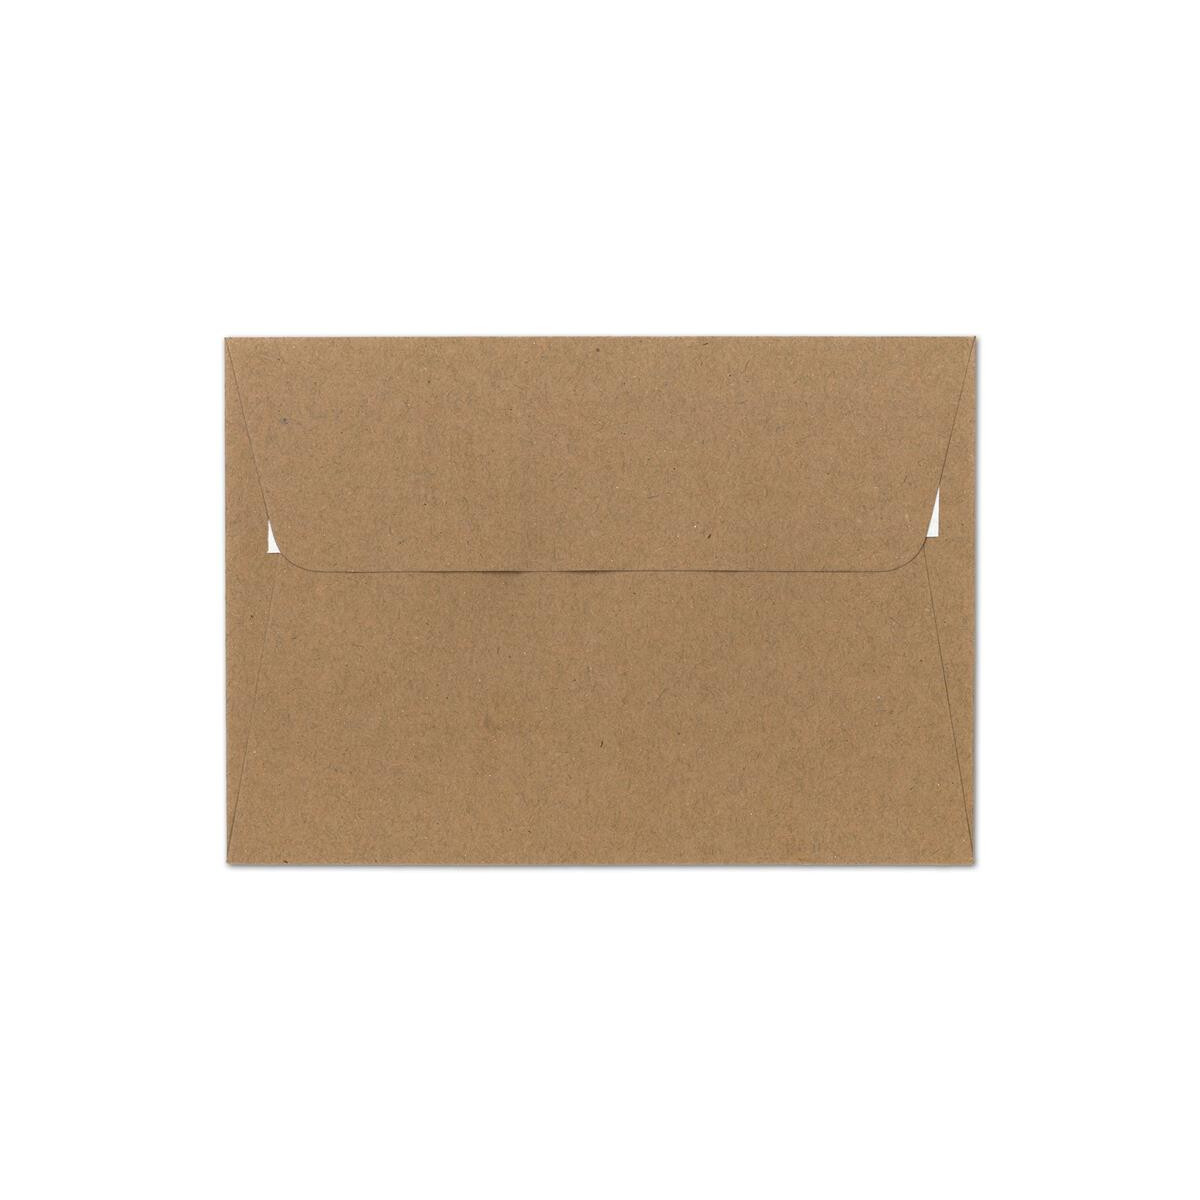 ÖKO ECO Vintage natur-braune rrecycelte Briefumschläge ideal für Hochzeit Weihnachten Geburtstag Spitzklappe ohne Fenster Einladungen 25 Sand-Braun DIN B6 Kraftpapier-Umschläge 125x175 mm 